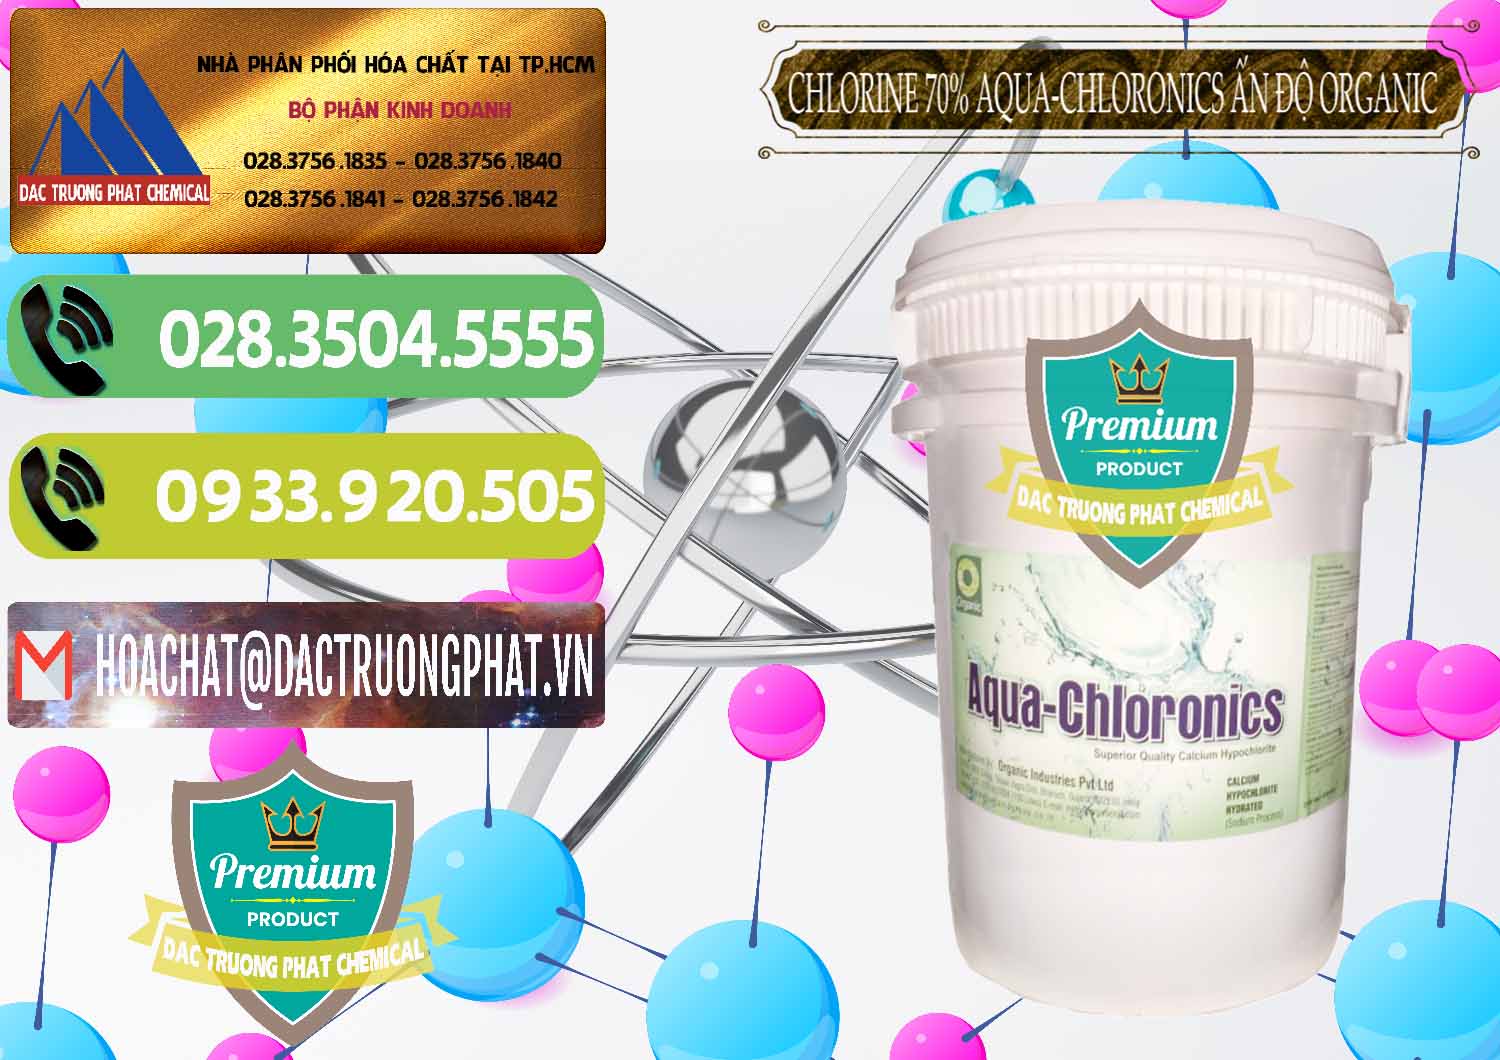 Cty bán - cung cấp Chlorine – Clorin 70% Aqua-Chloronics Ấn Độ Organic India - 0211 - Cty nhập khẩu & phân phối hóa chất tại TP.HCM - hoachatmientay.vn